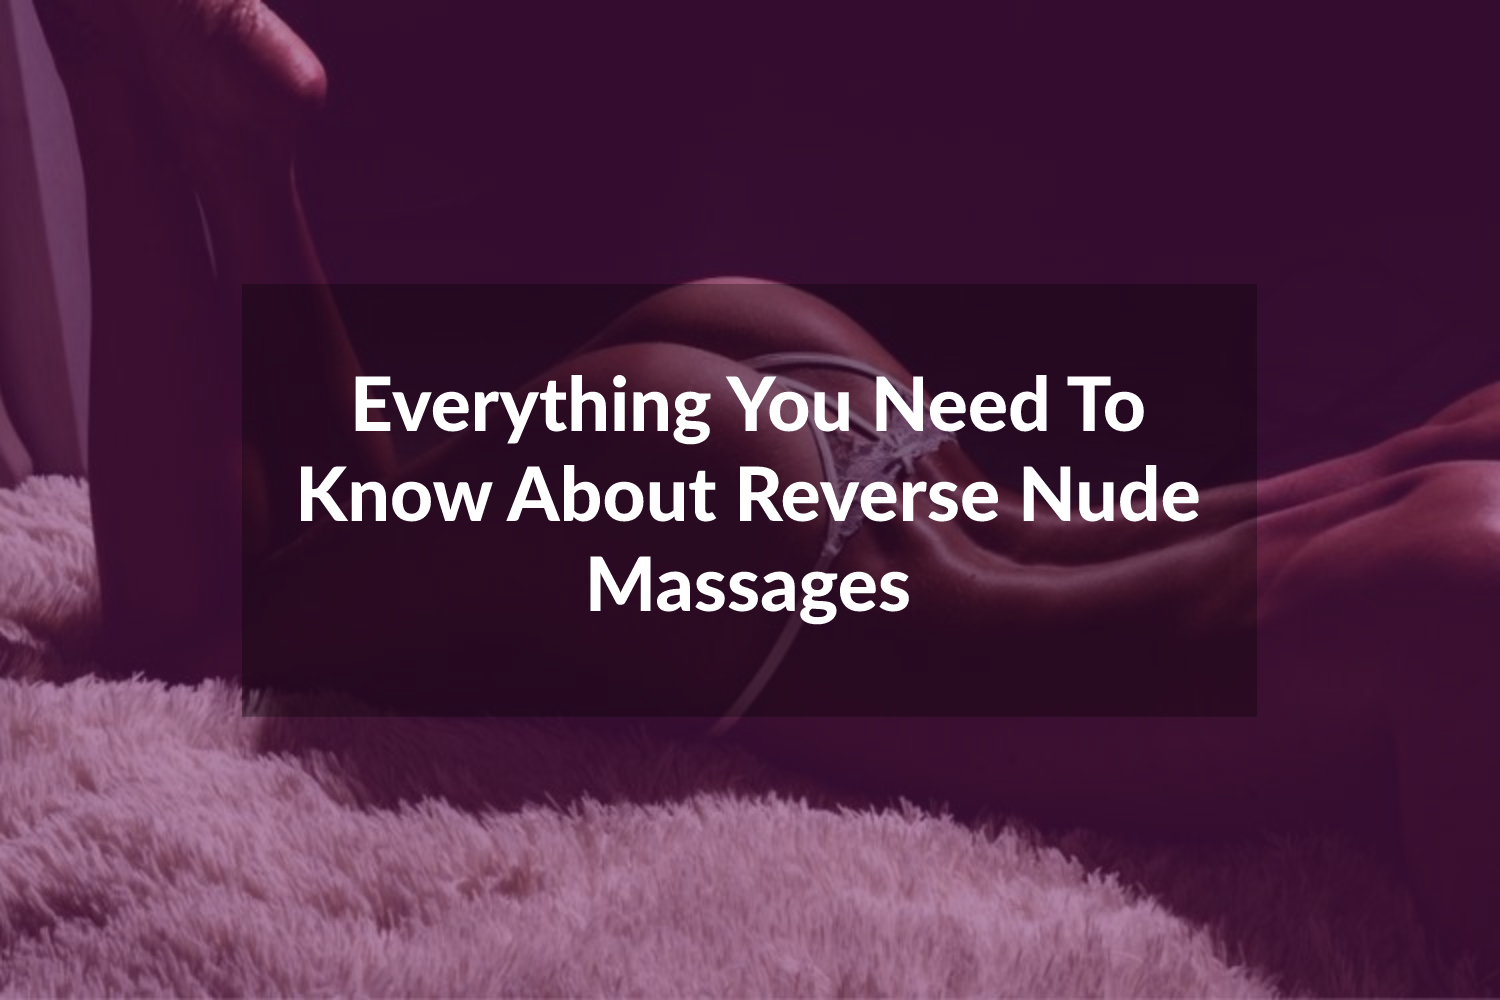 Nude reverse